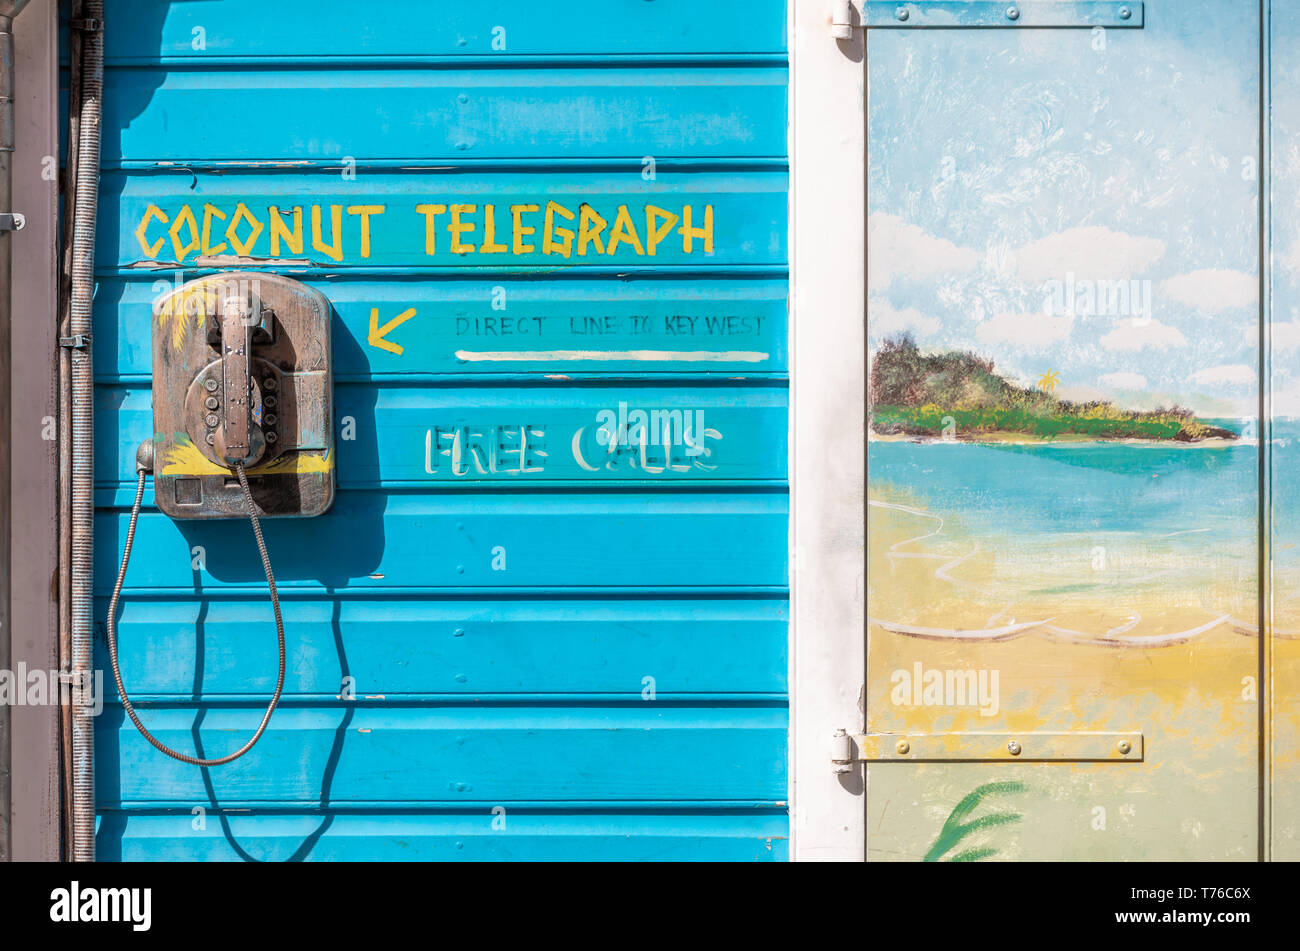 Coco el telégrafo, el teléfono antiguo montado en una pared exterior en St Barts, explicando que se trata de una manera de comunicarse directamente con Key West Foto de stock